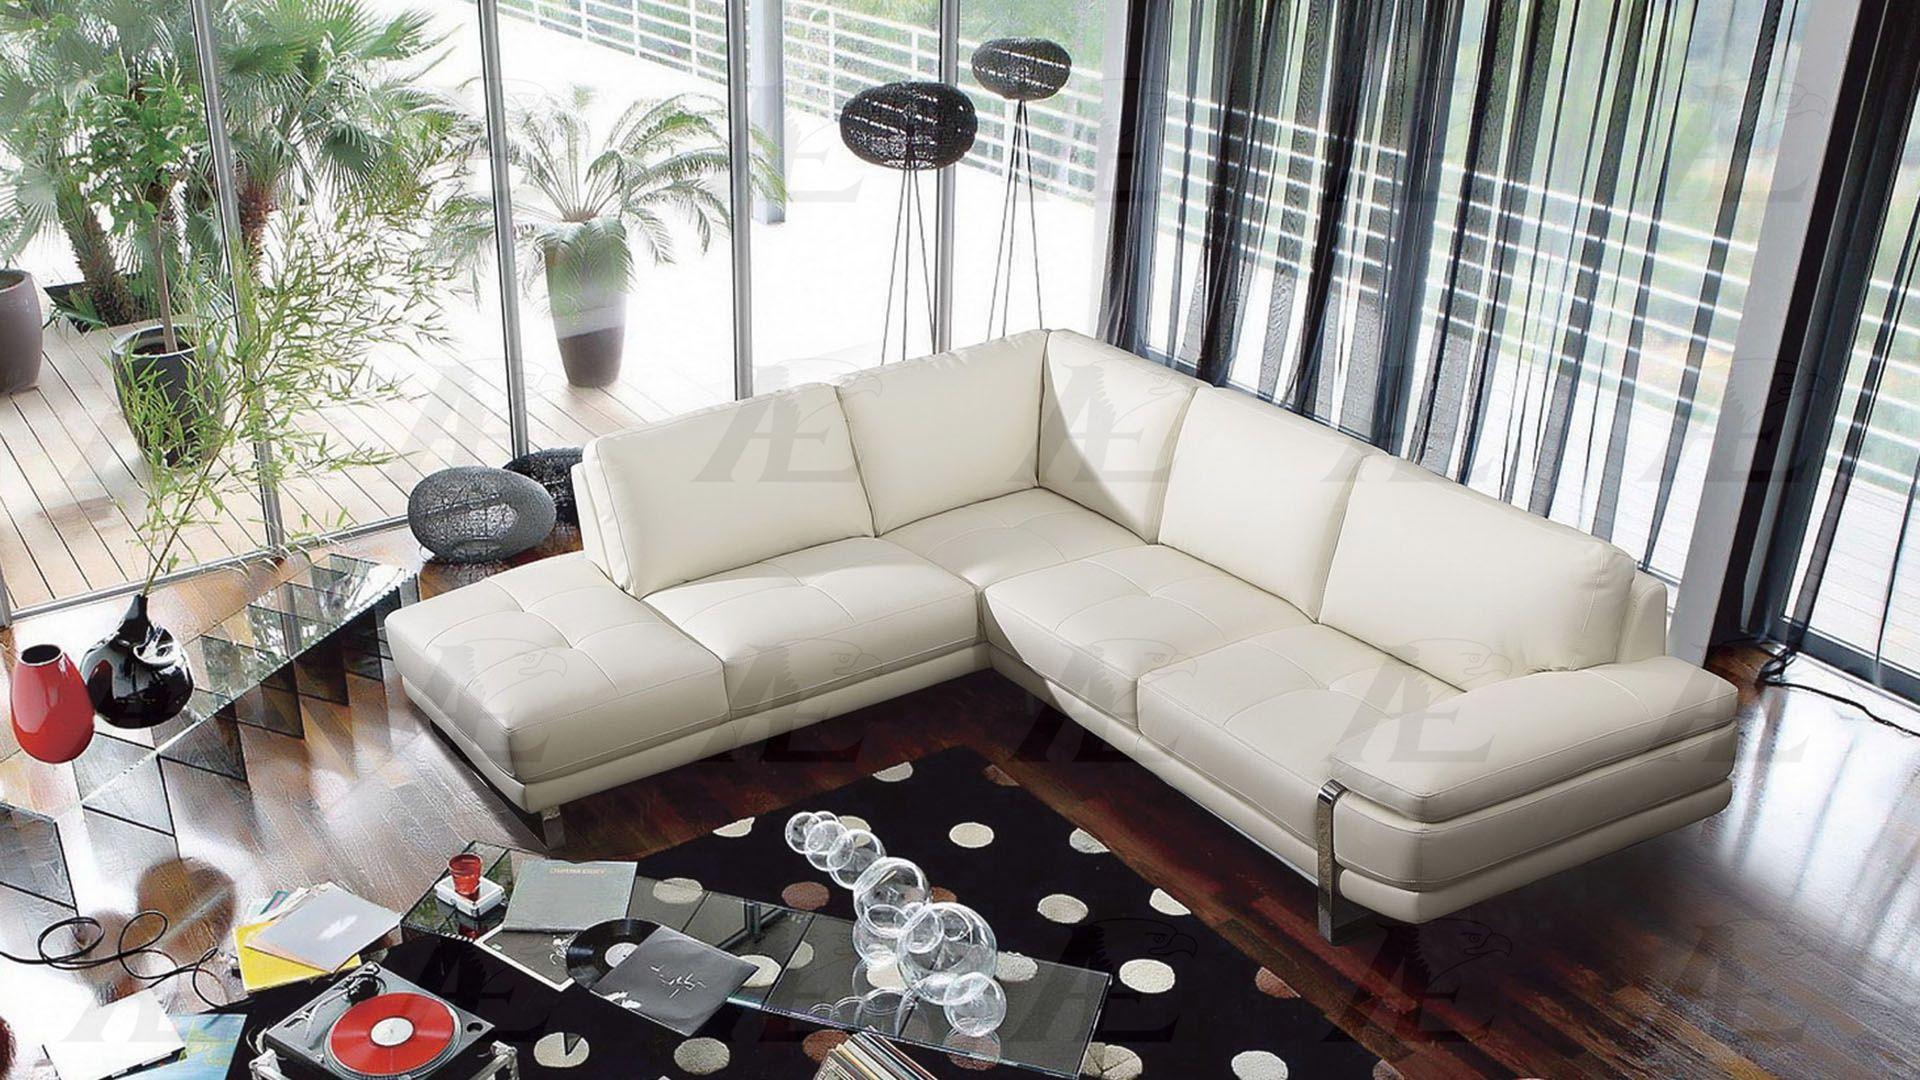 

        
American Eagle Furniture EK-L025-W Sectional Sofa White Italian Leather 00656237666825
